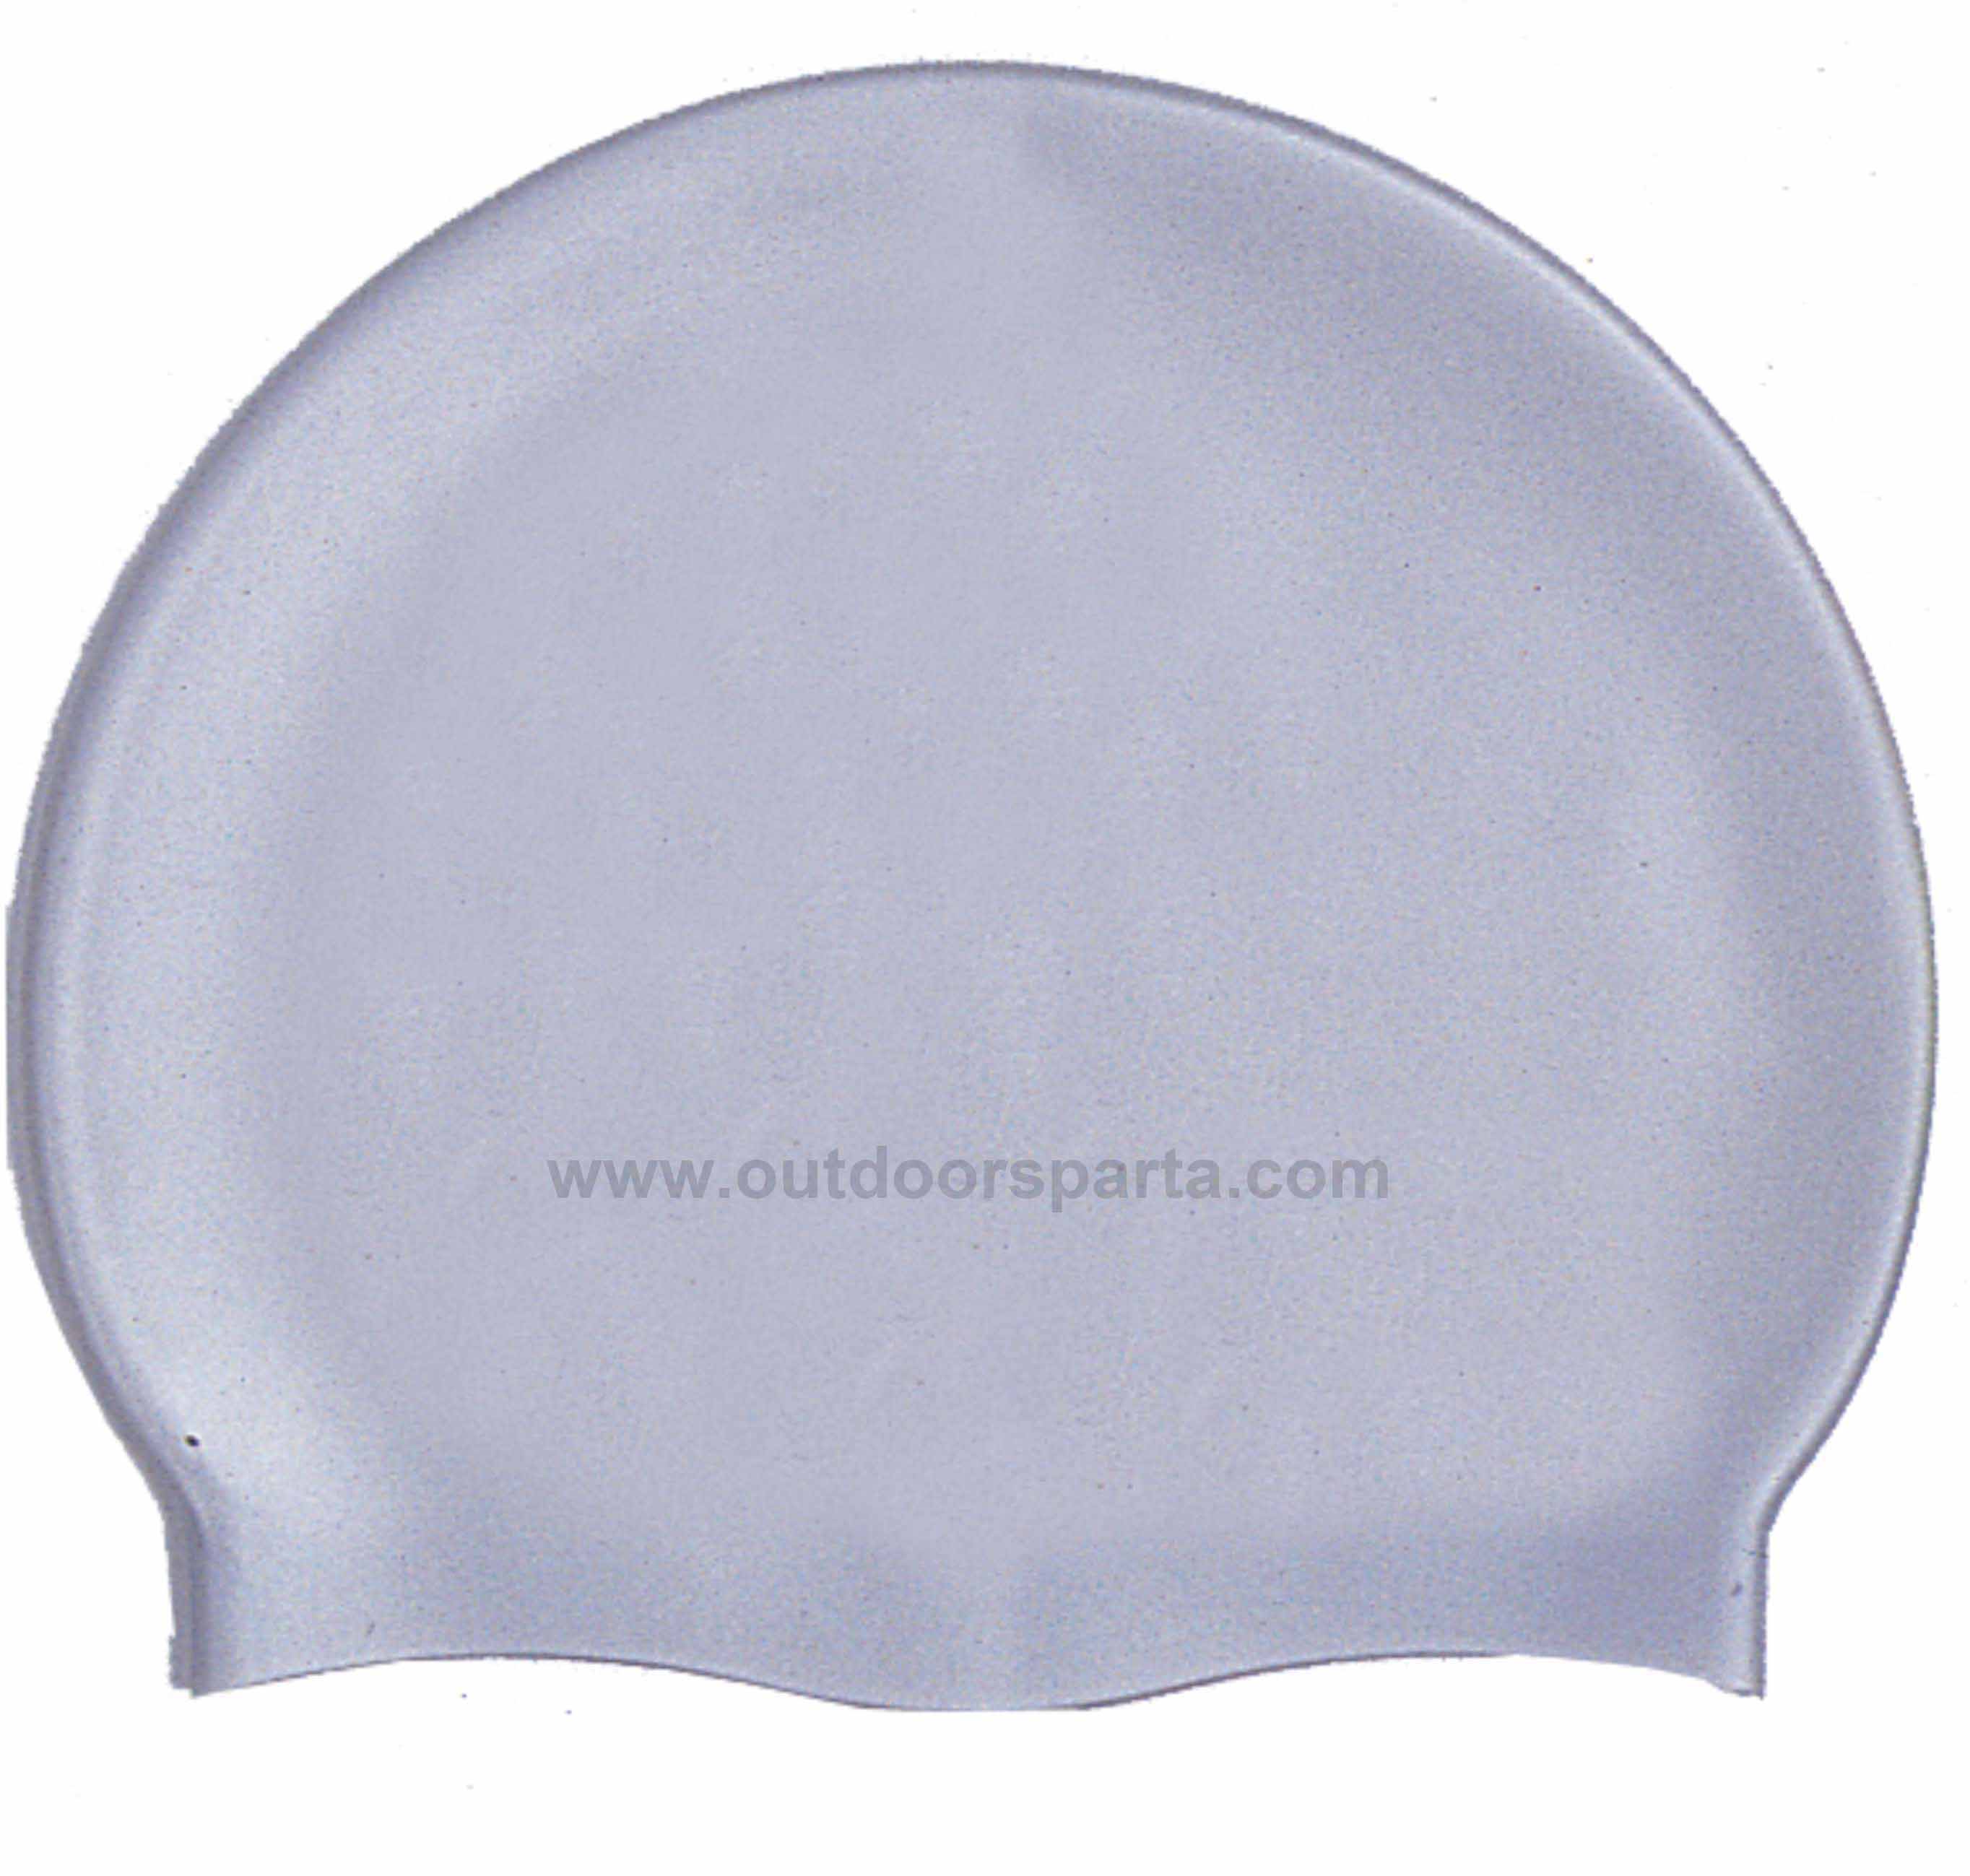 Plain silicone swimming caps(CAP-100)